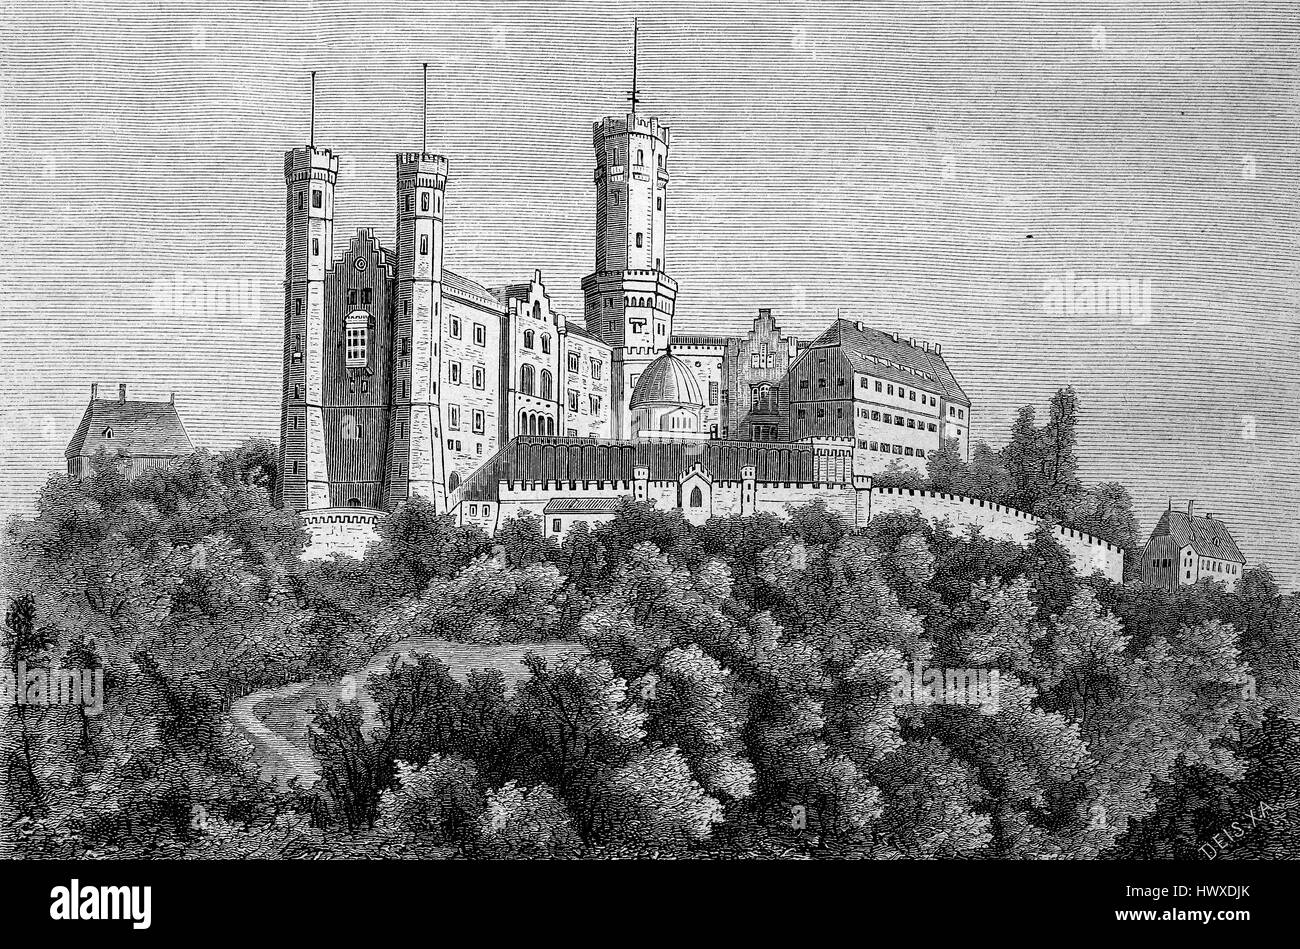 Château de Schaumburg, Allemand - Schloss Schaumburg, est un château en Rhénanie-Palatinat, Allemagne,, reproduction d'une image, gravure sur bois de l'année 1881, l'amélioration numérique Banque D'Images